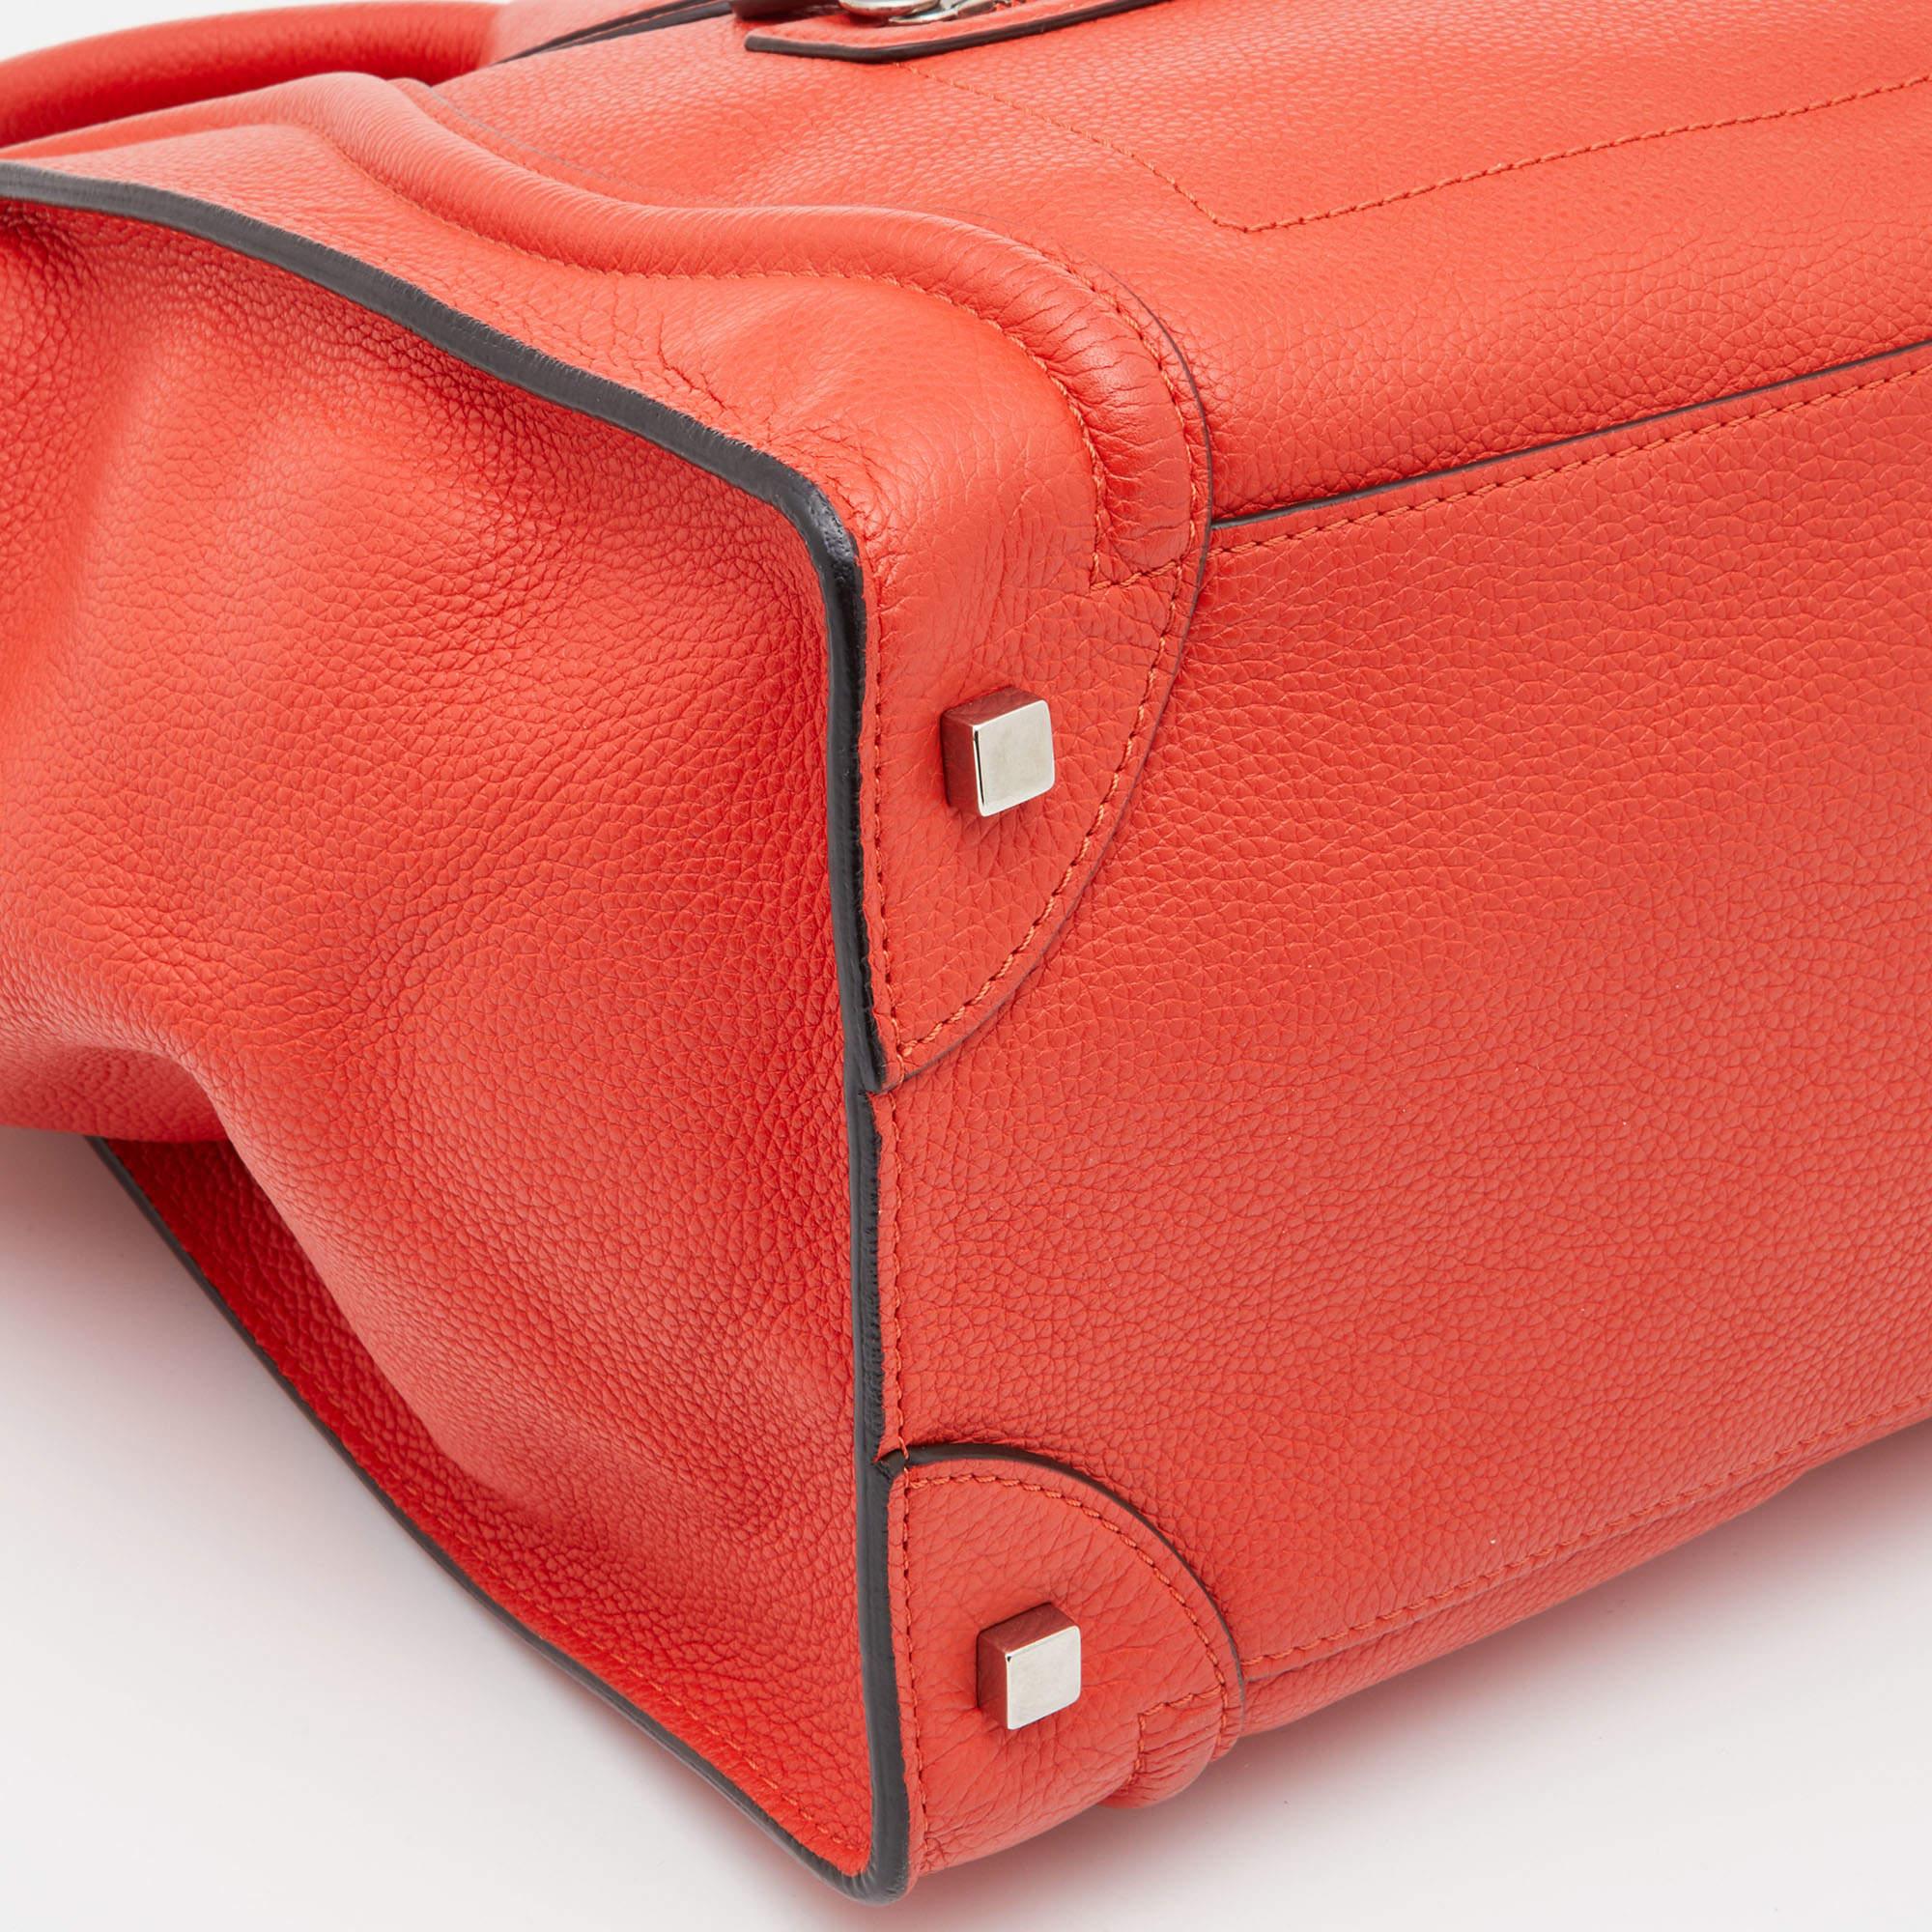 Celine Orange Leather Mini Luggage Tote 11